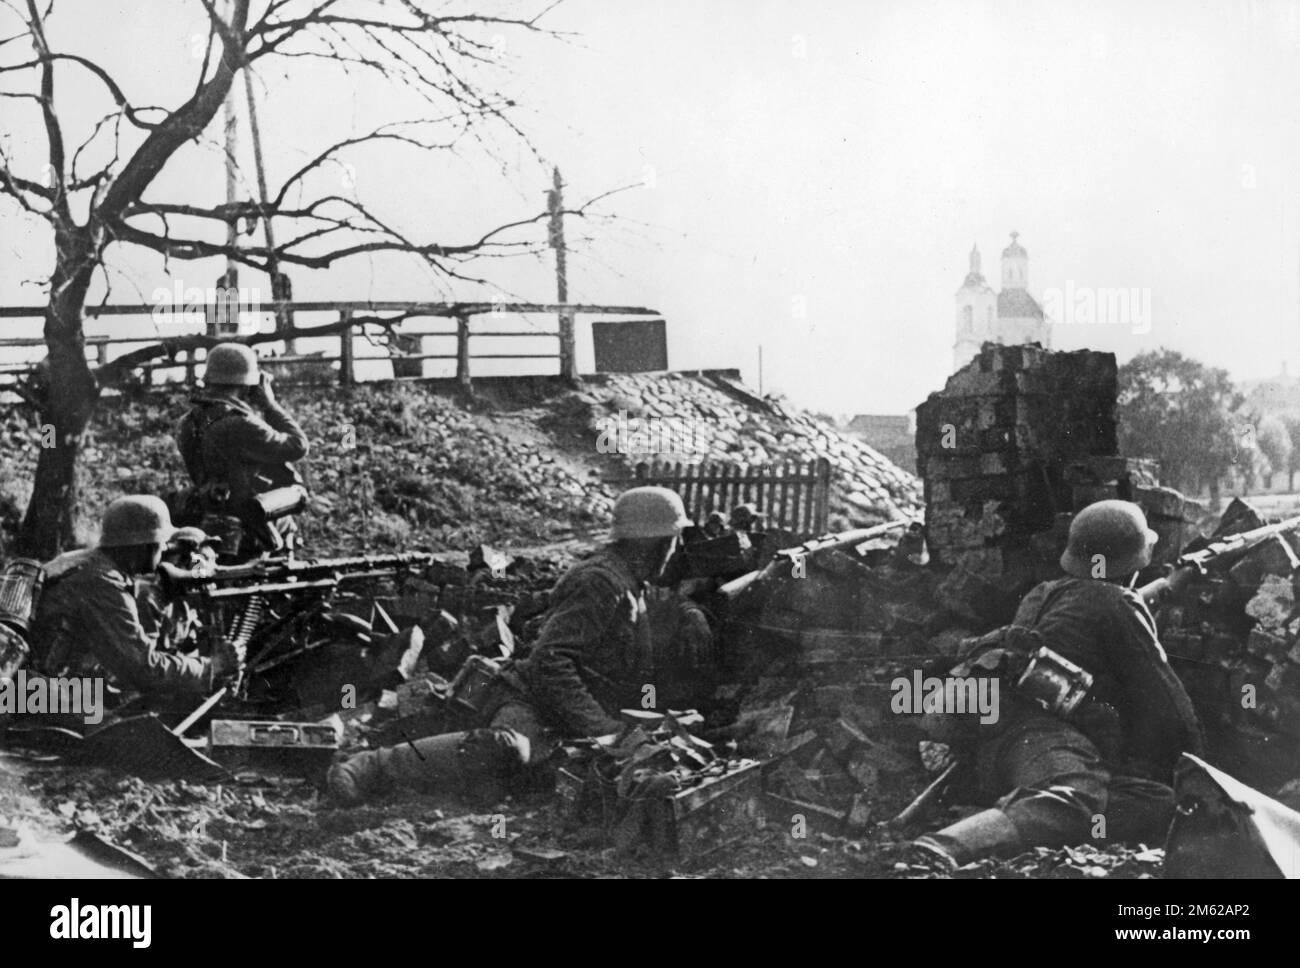 Posizione di fanteria tedesca con MITRAGLIATRICE MG-34 vicino alla chiesa durante la battaglia per la città di Velikie Luki nella Russia settentrionale durante l'operazione Barbarossa, l'invasione nazista dell'Unione Sovietica. Foto Stock